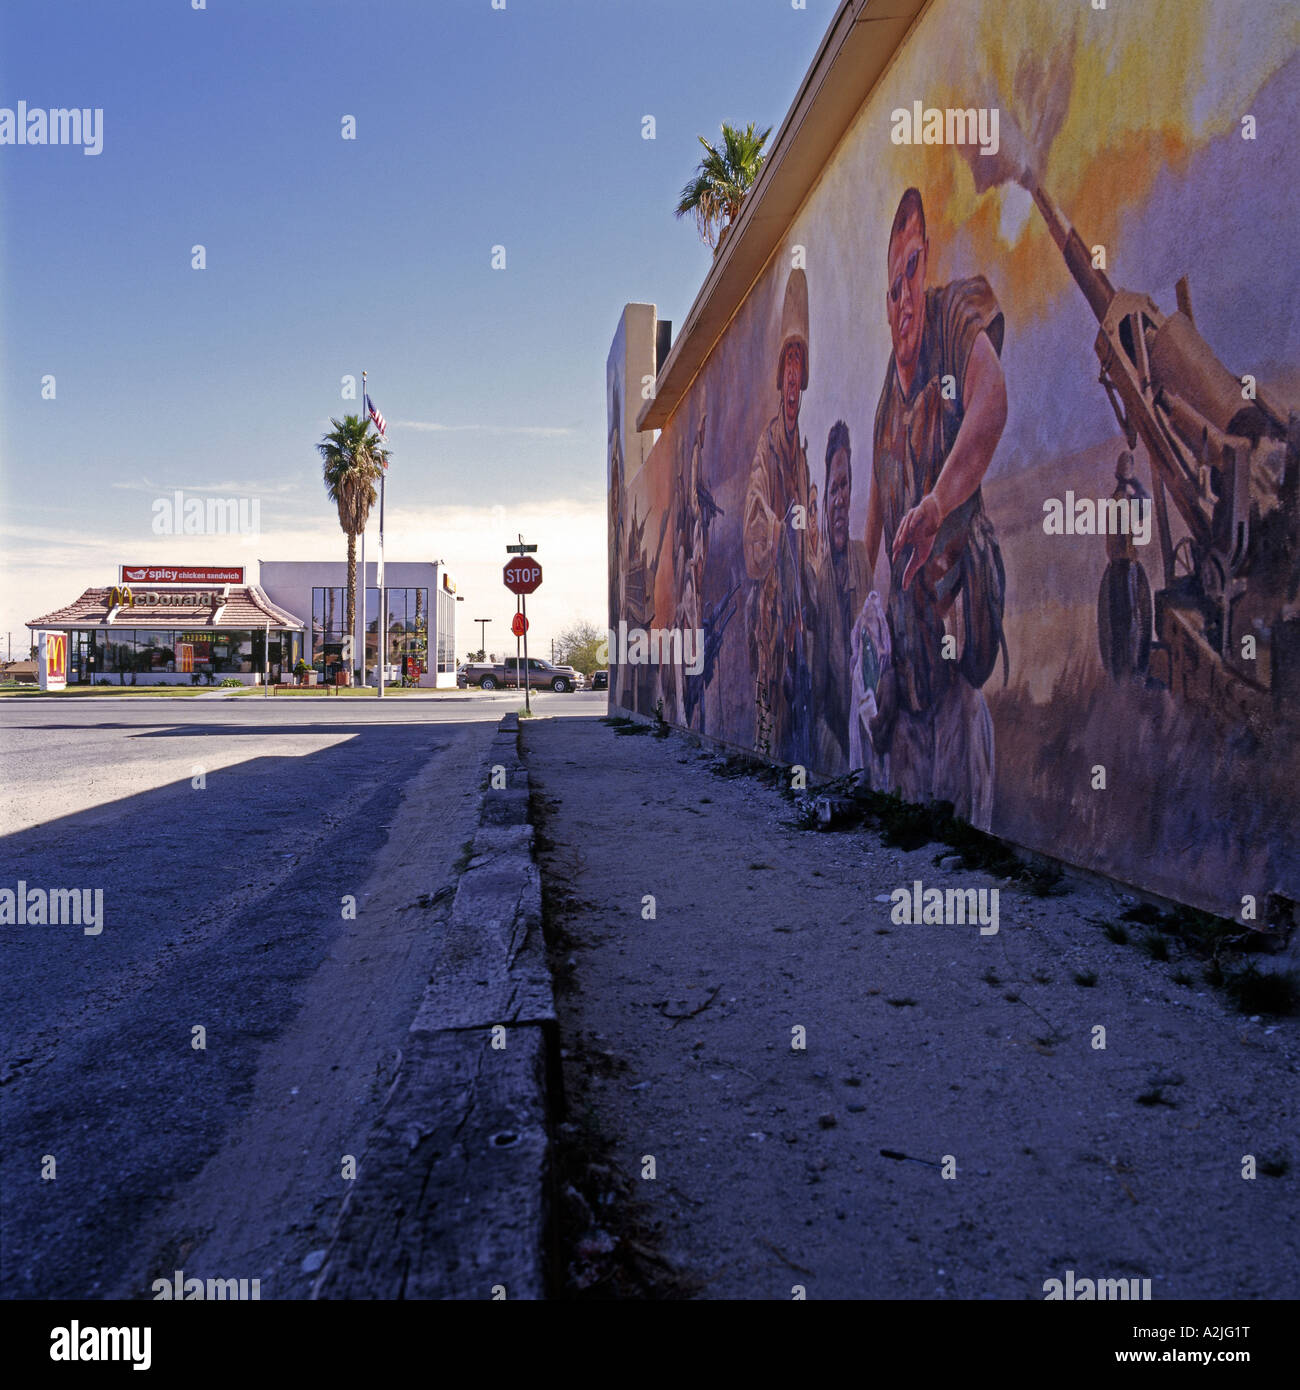 Wandbild Darstellung Krieg-Szene, gemalt auf der Seite eines Gebäudes in Twentynine Palms, Kalifornien, USA. Stockfoto